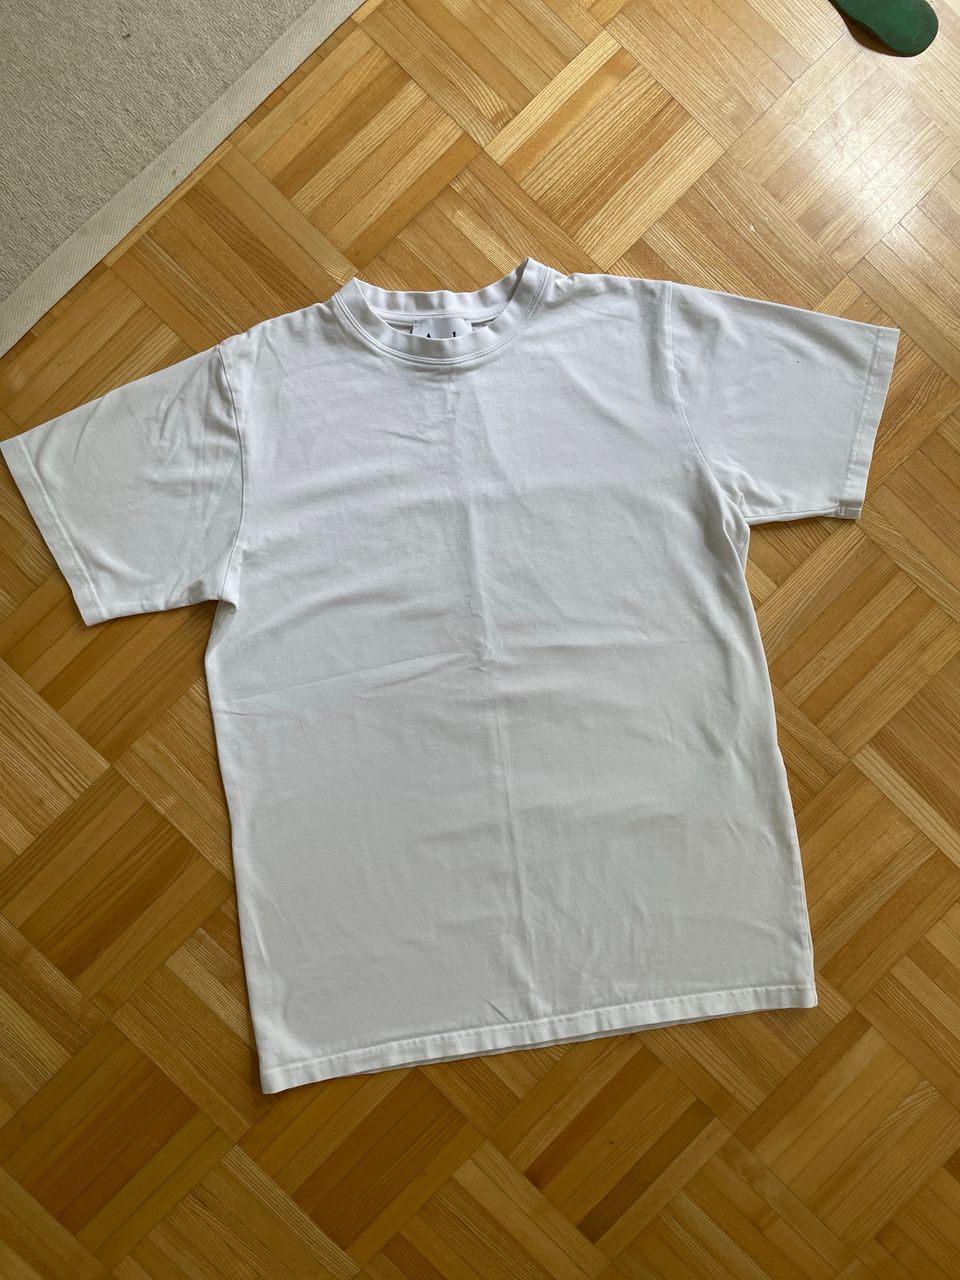 ARELA valkoinen t-paita M